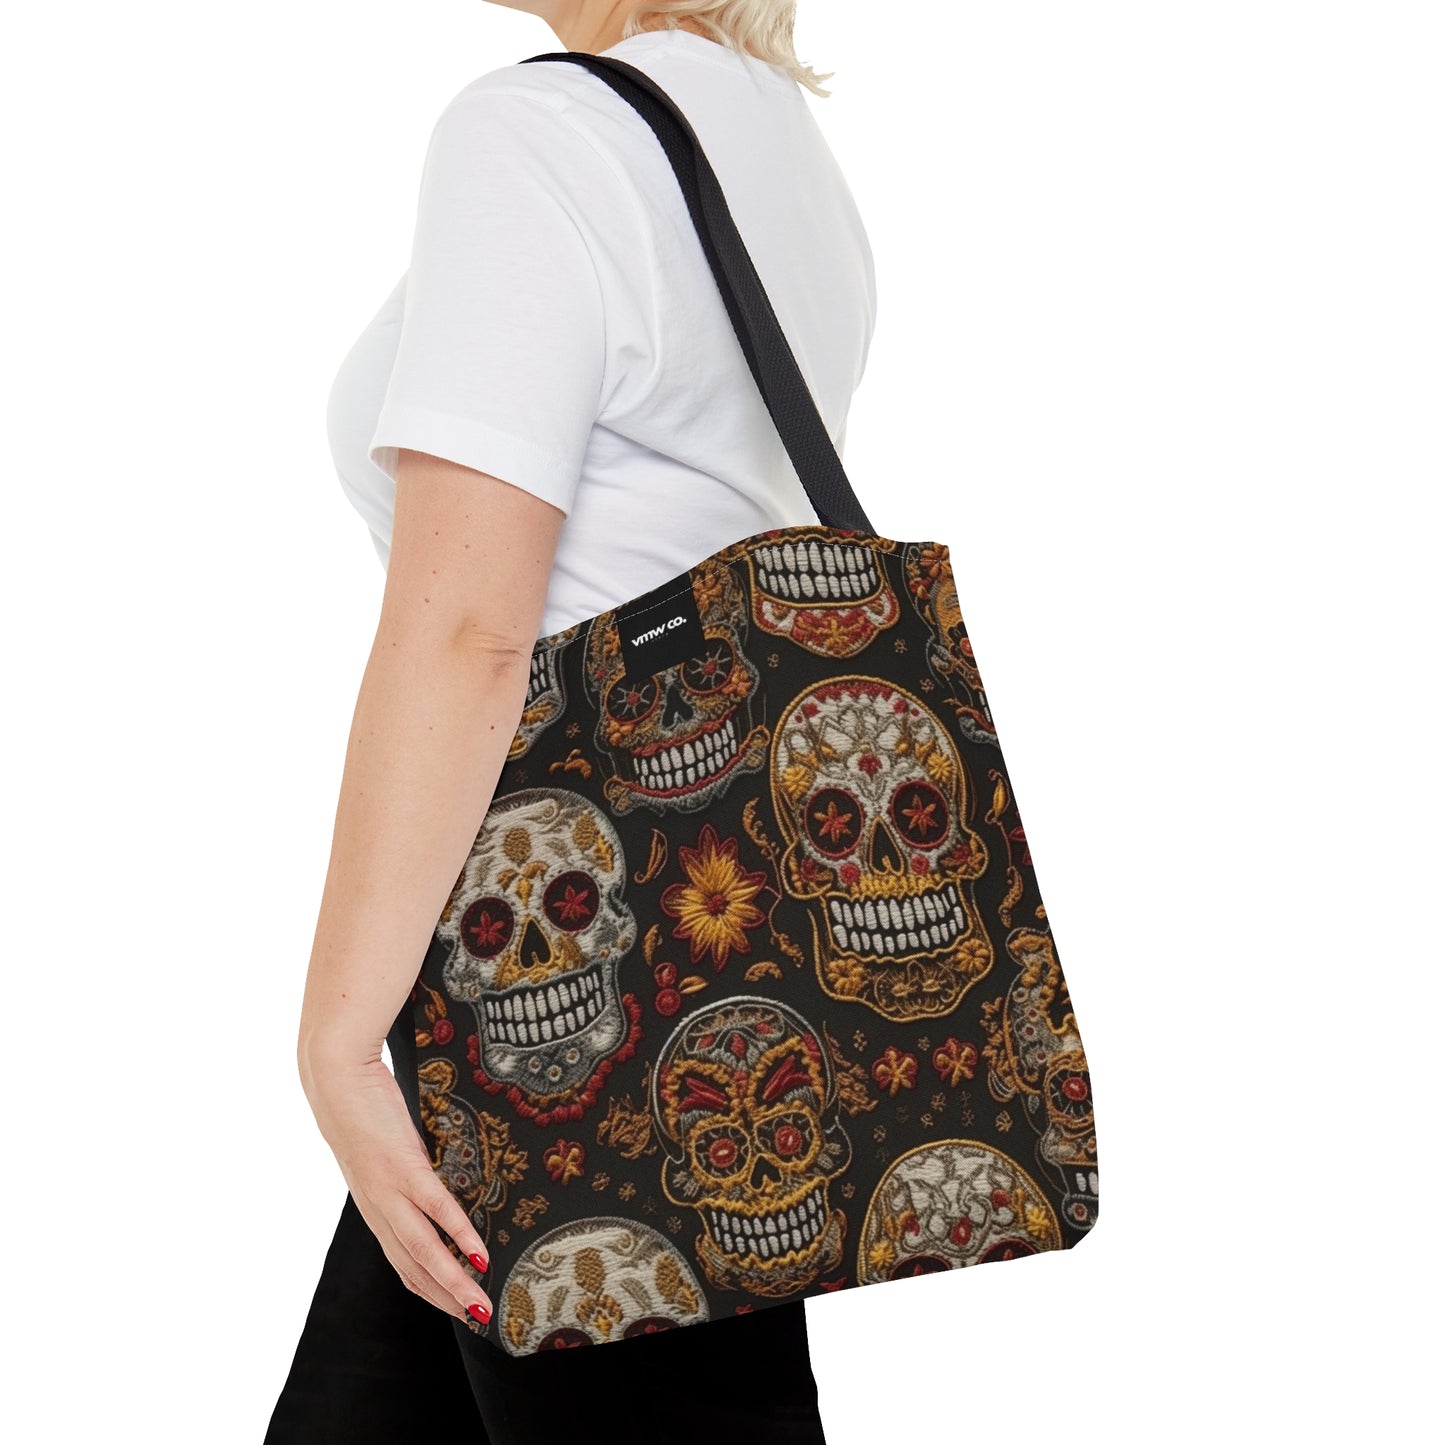 Embroidered Skulls Tote Bag (AOP)